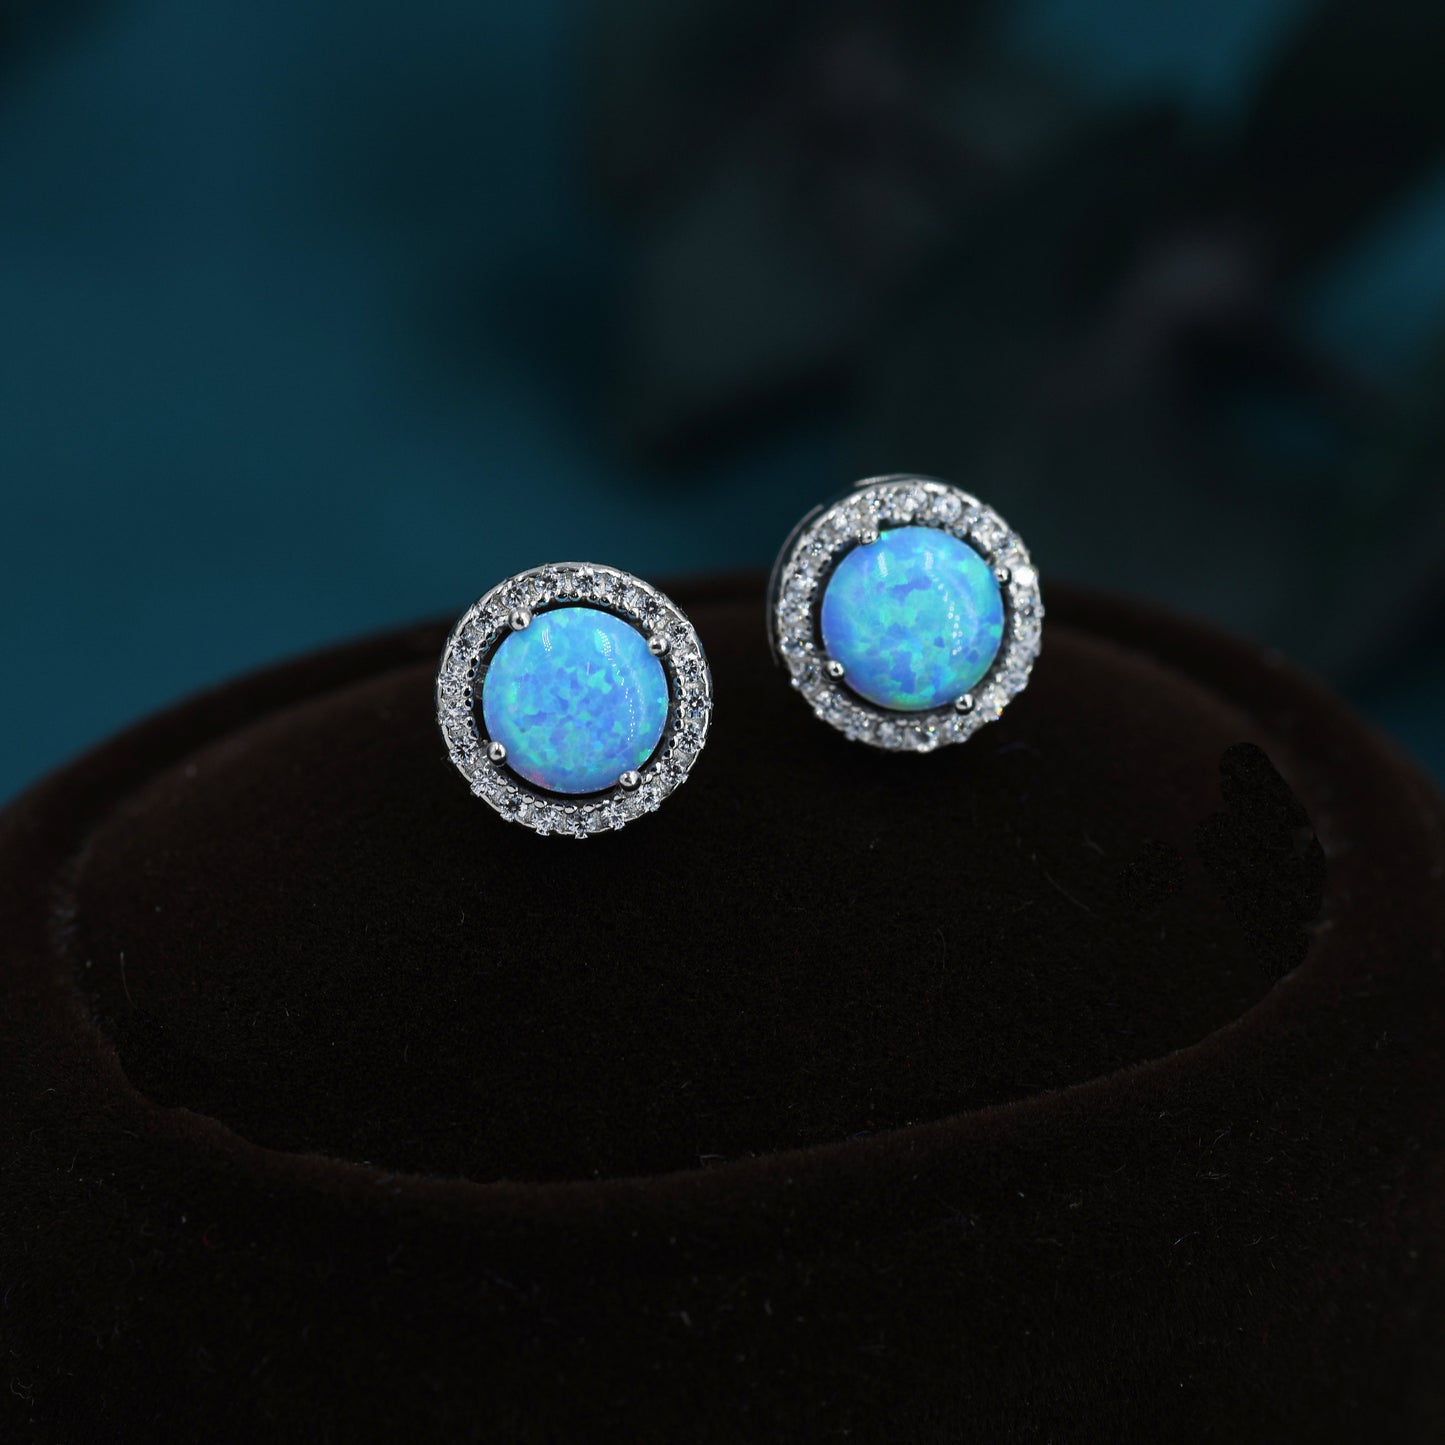 Blue Opal CZ Halo Stud Earrings in Sterling Silver - 8mm - Sustainable Lab Opal - Petite Stud Earrings